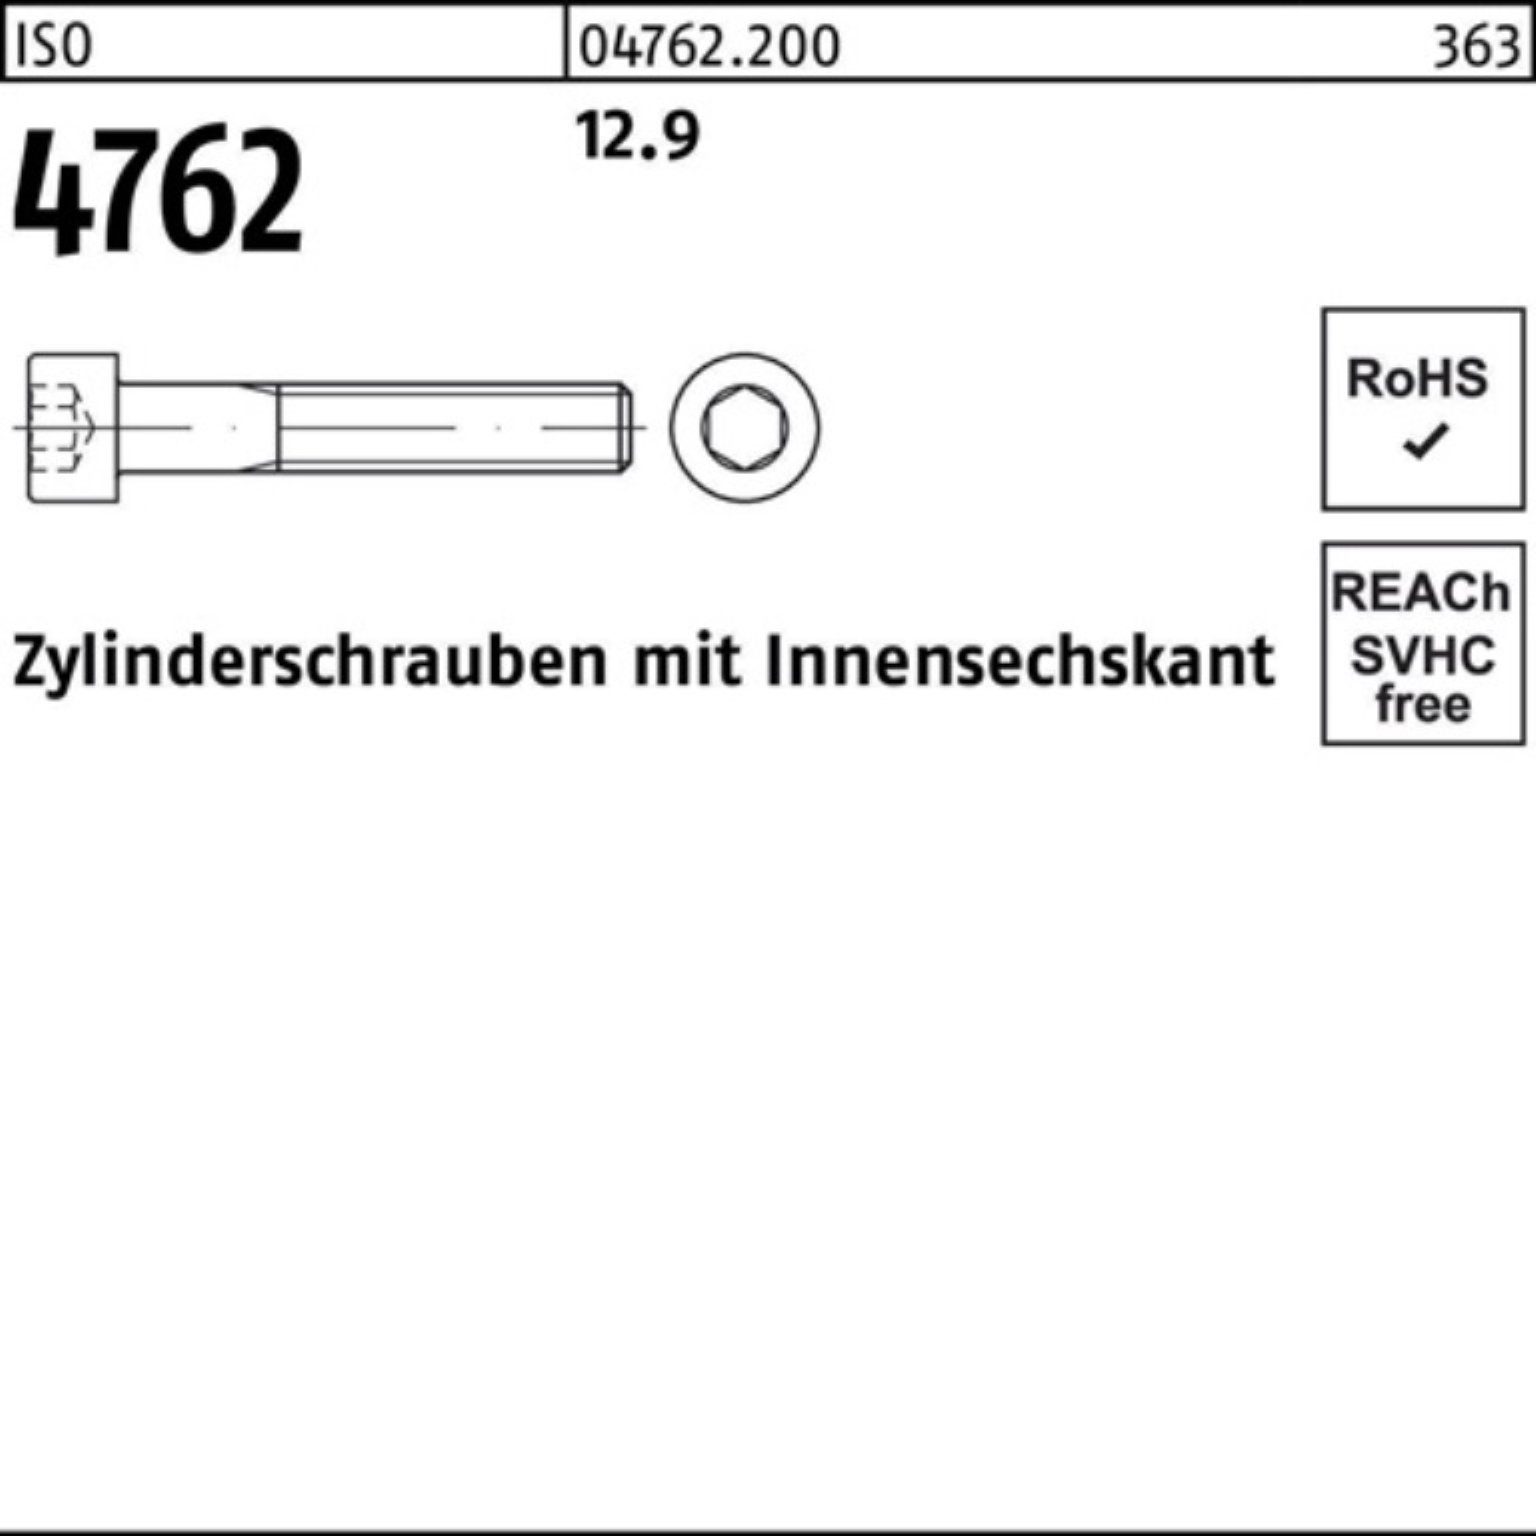 Reyher Zylinderschraube 100er Pack Zylinderschraube 1 4762 12.9 Innen-6kt 90 ISO Stück M33x I